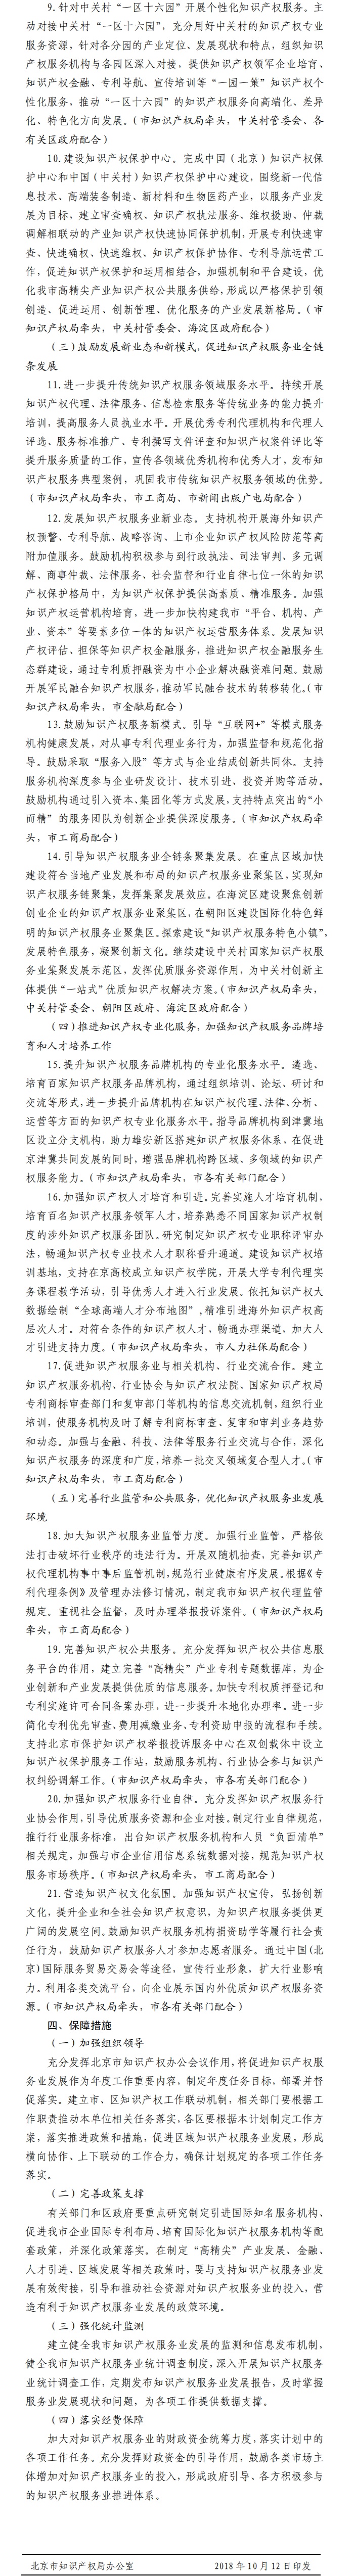 北京市促进知识产权服务业发展行动计划(2018年—2020年)-2.jpg